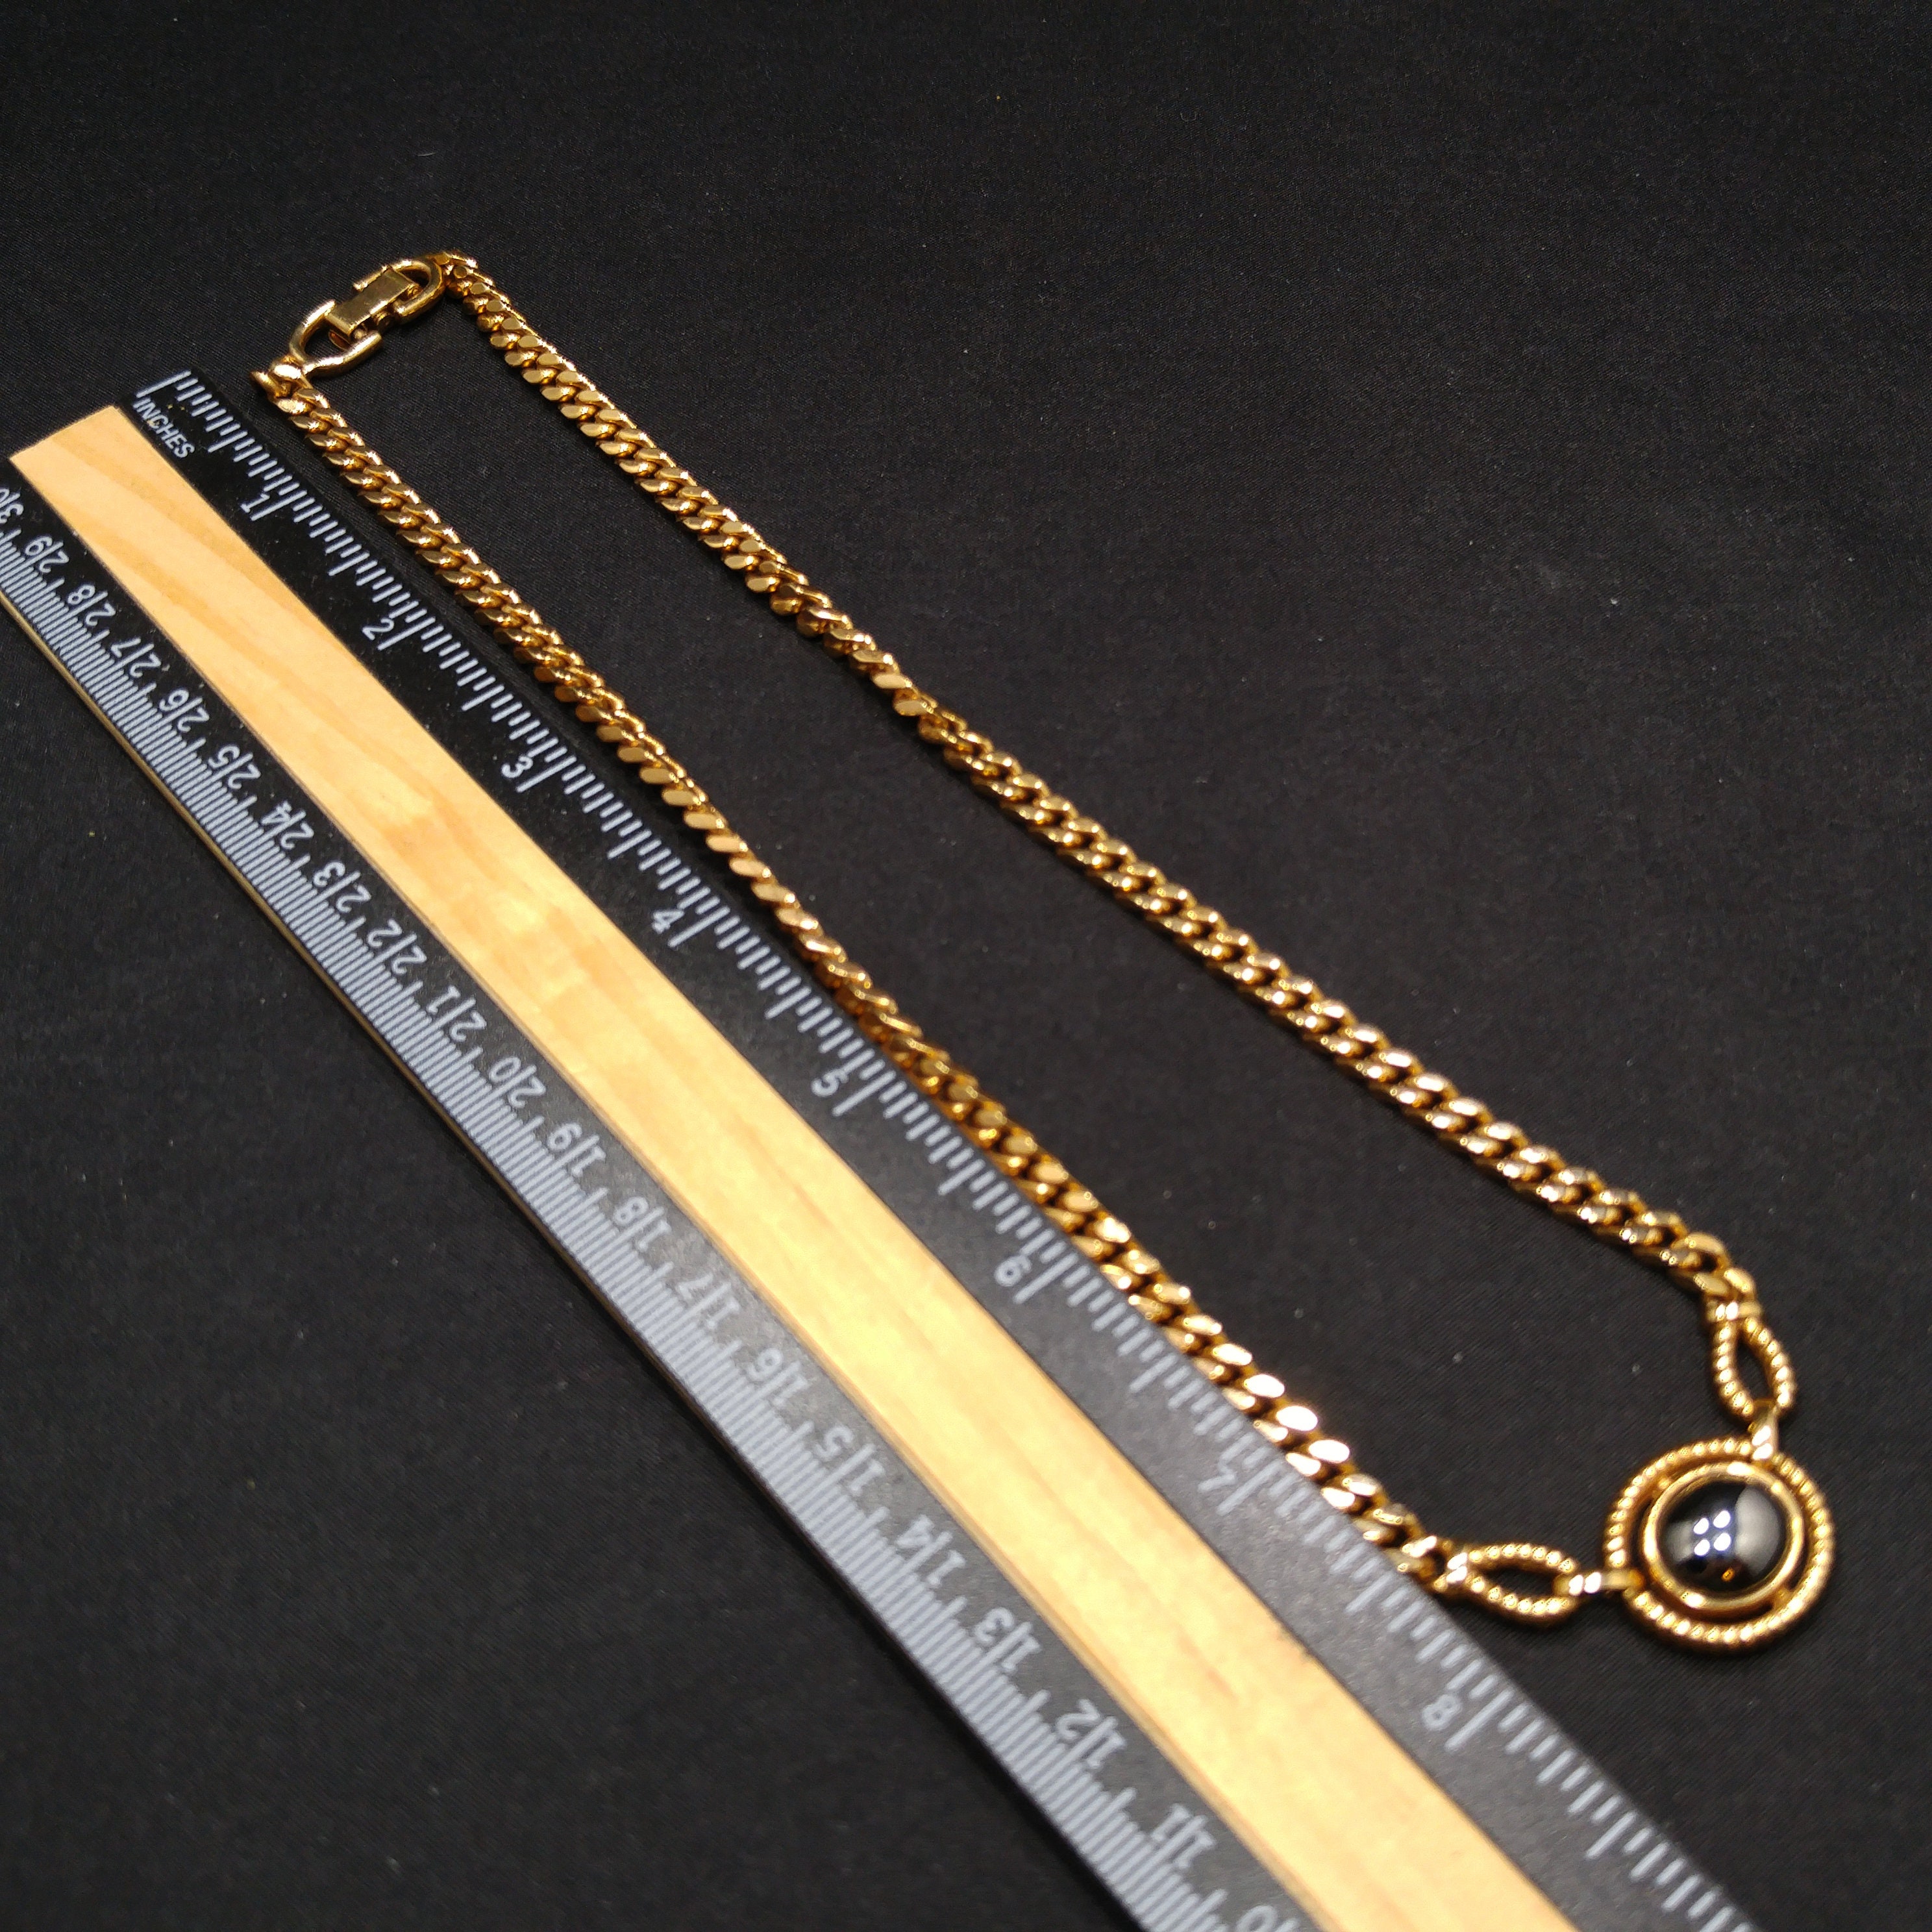 Louis Feraud Paris Gold Plated Pendant Necklace Hematite 